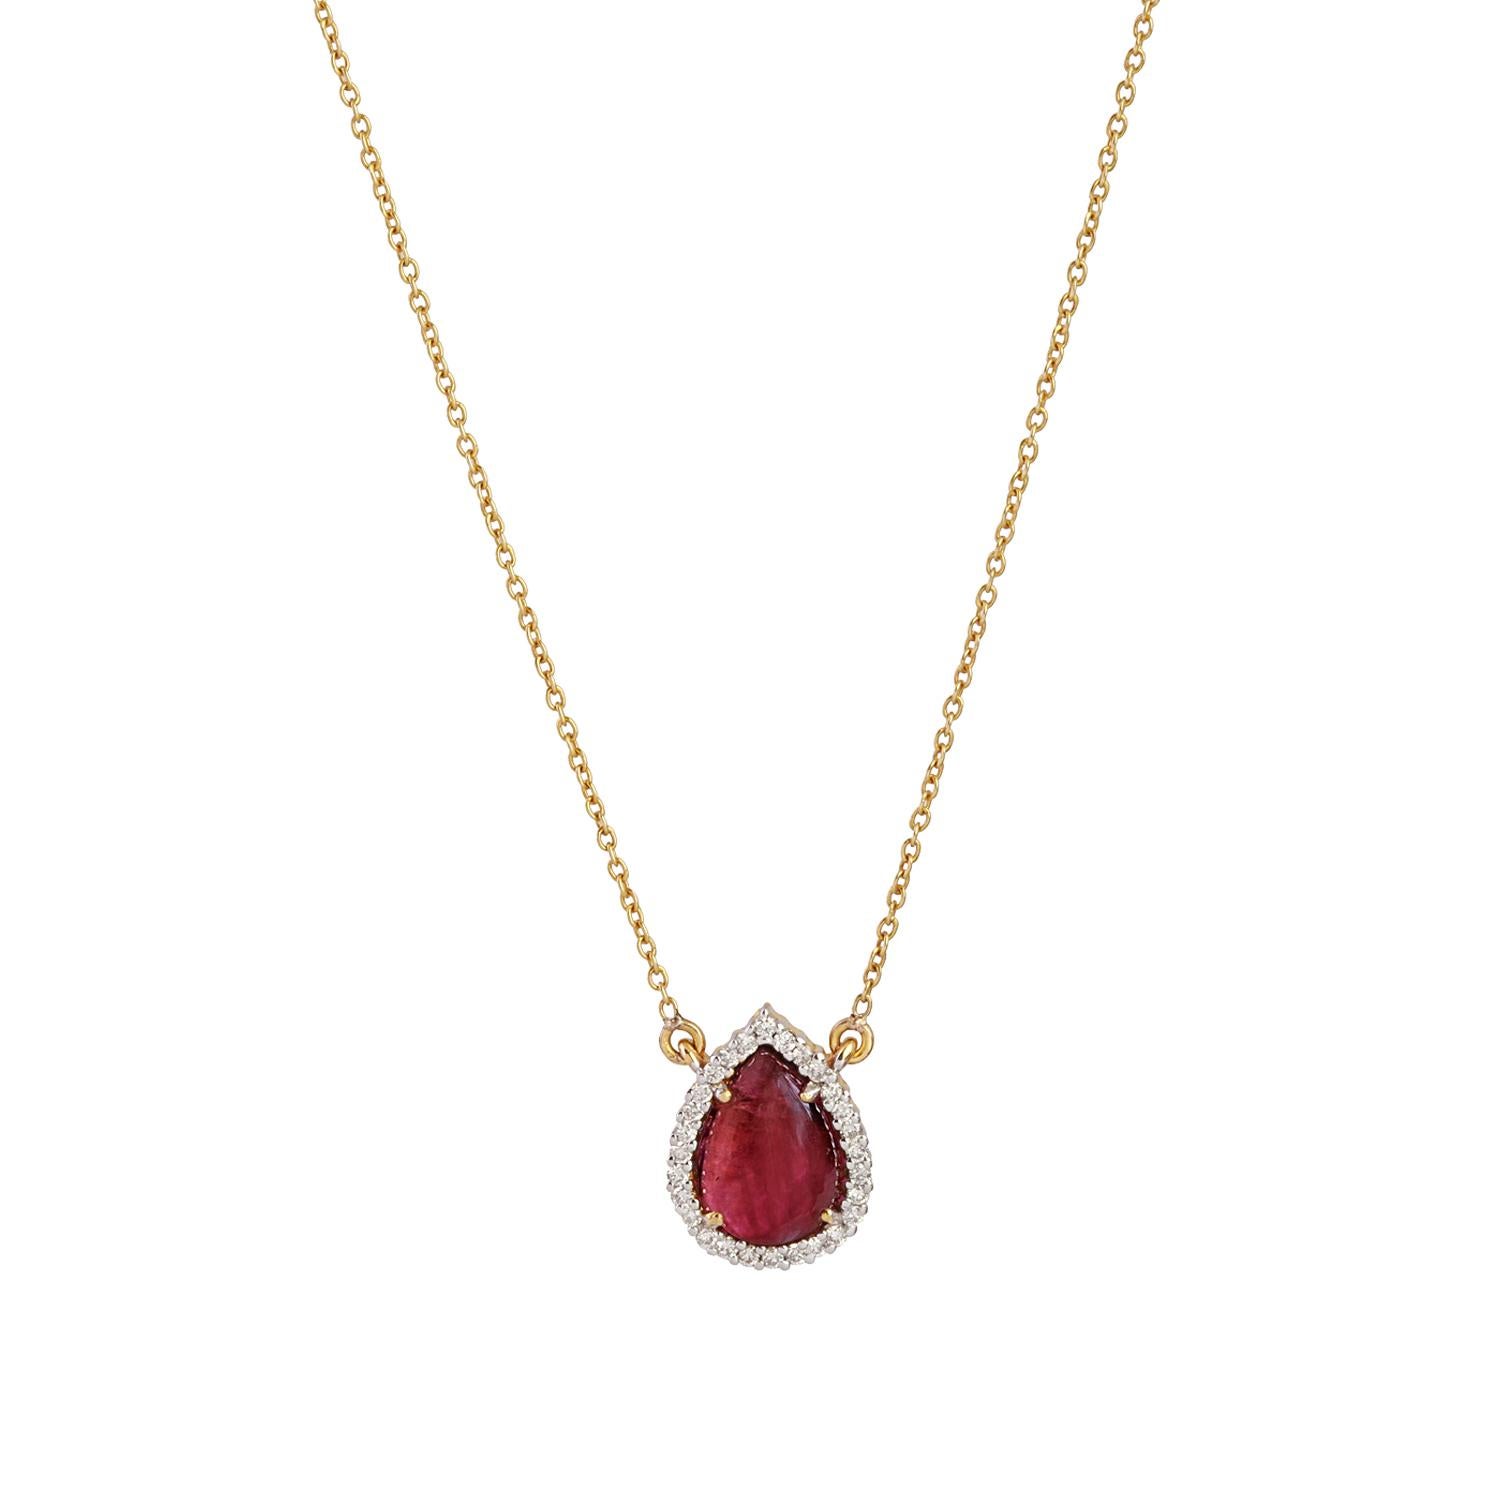 Voici un magnifique pendentif en or 14 carats composé de tourmaline rose et de diamants, accompagné d'une chaîne également en or 14 carats. Ce produit contient des diamants naturels et de la tourmaline rose de haute qualité. Il est idéal pour toutes